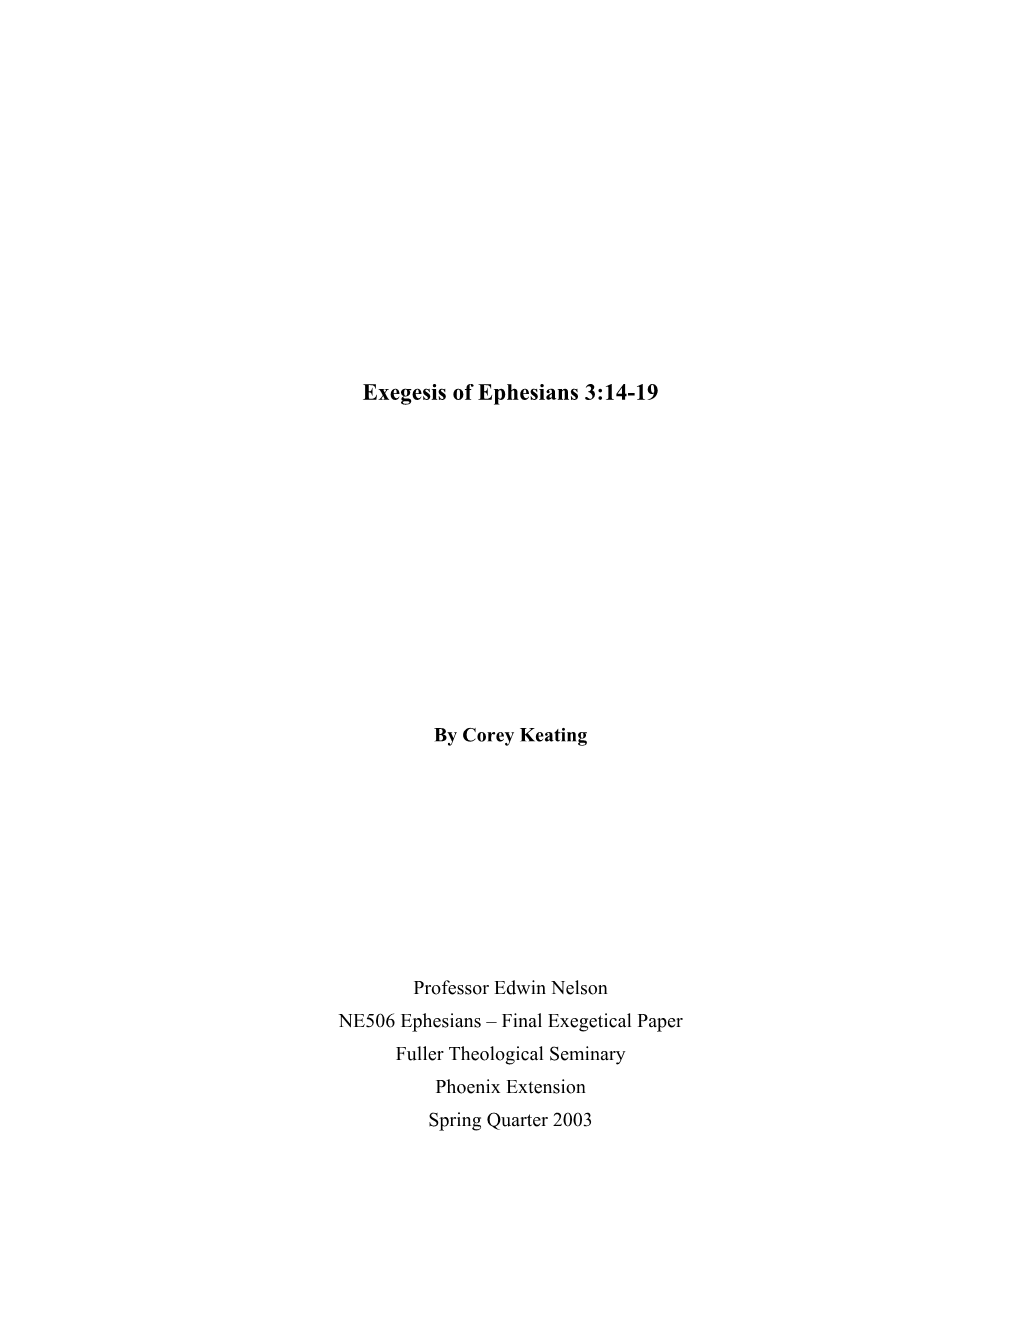 Finished Translation of Ephesians 3:14-19